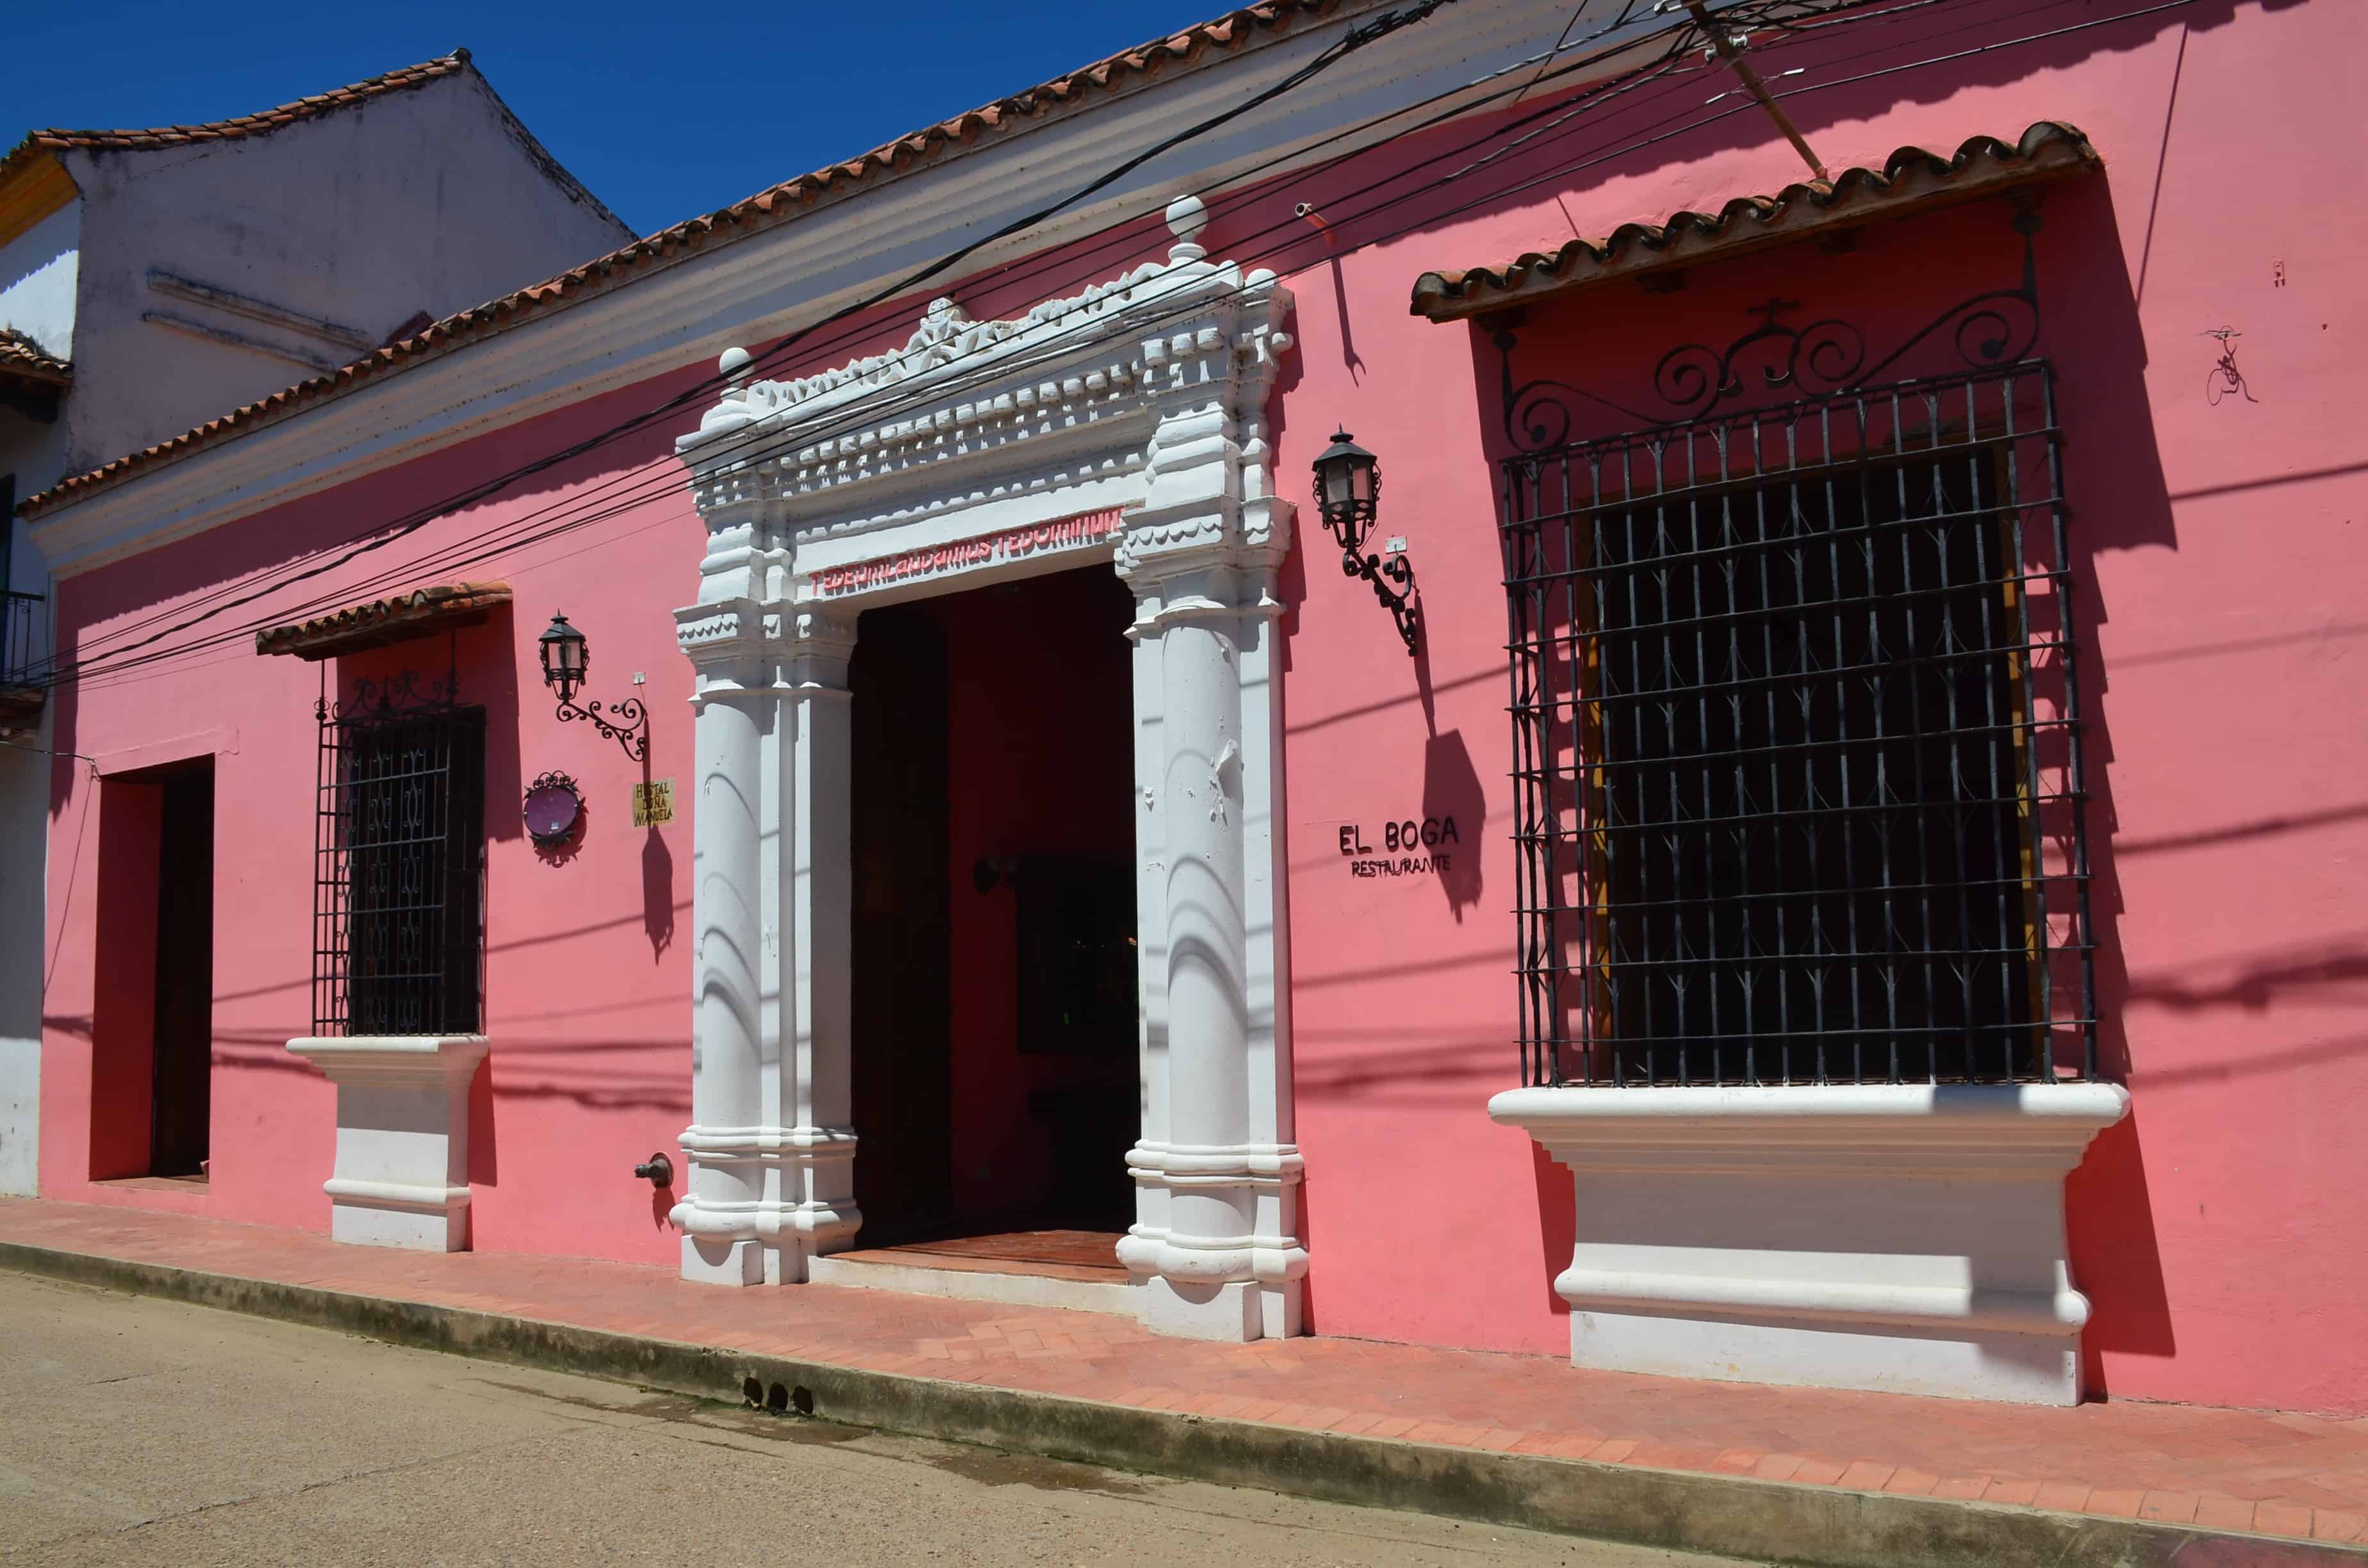 Hostal Doña Manuela in Mompox, Bolívar, Colombia